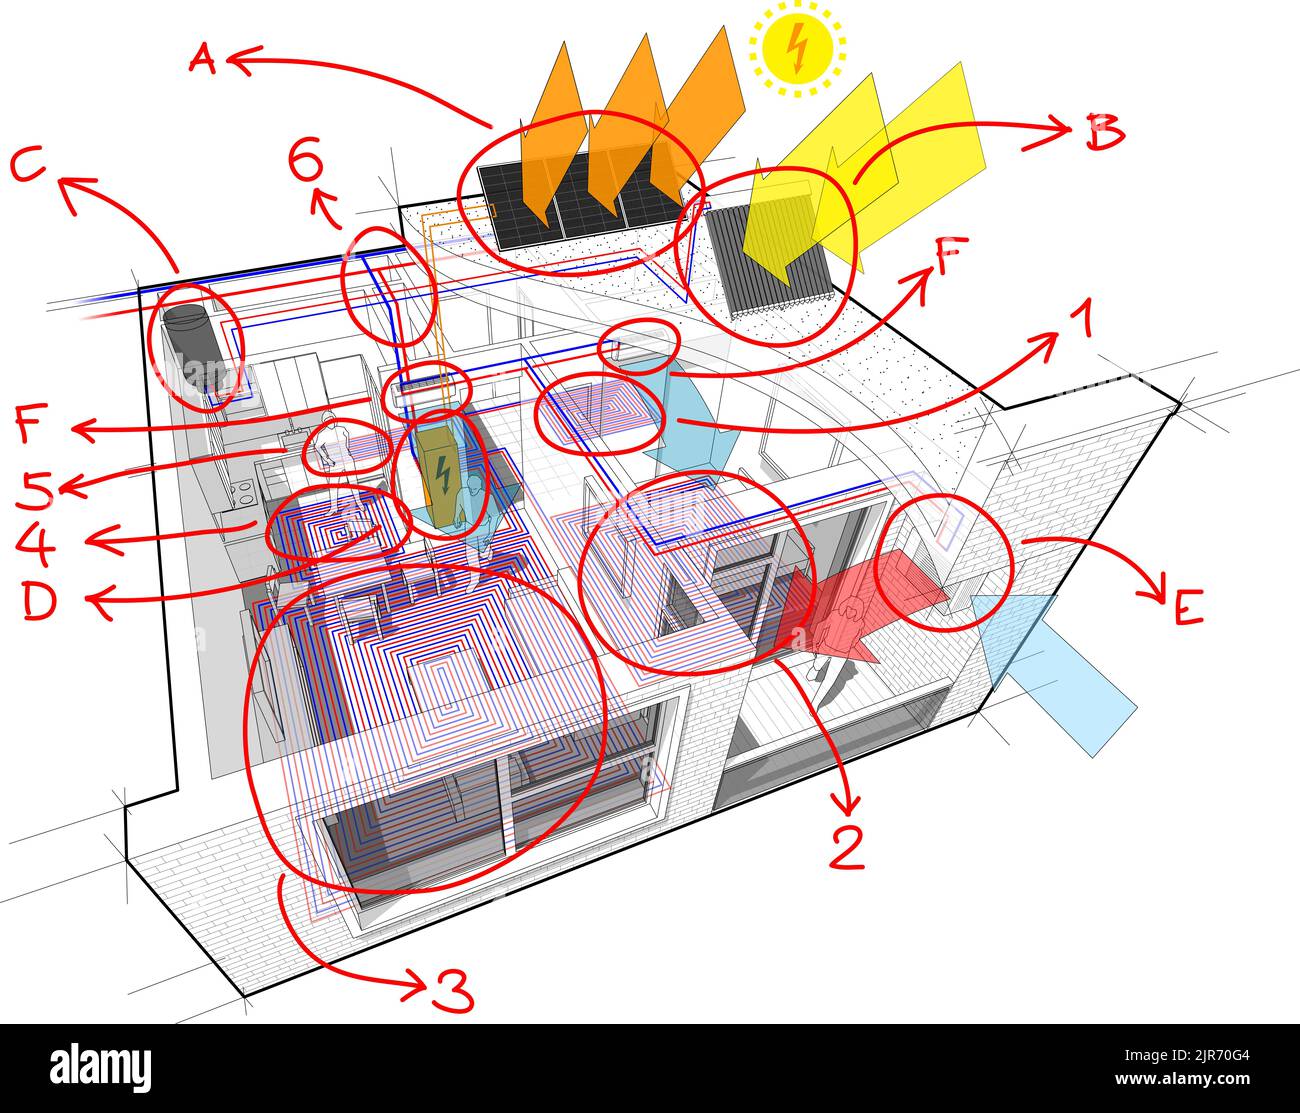 Schema dell'appartamento con riscaldamento a pavimento e pannelli fotovoltaici e solari, aria condizionata e note disegnate a mano Foto Stock